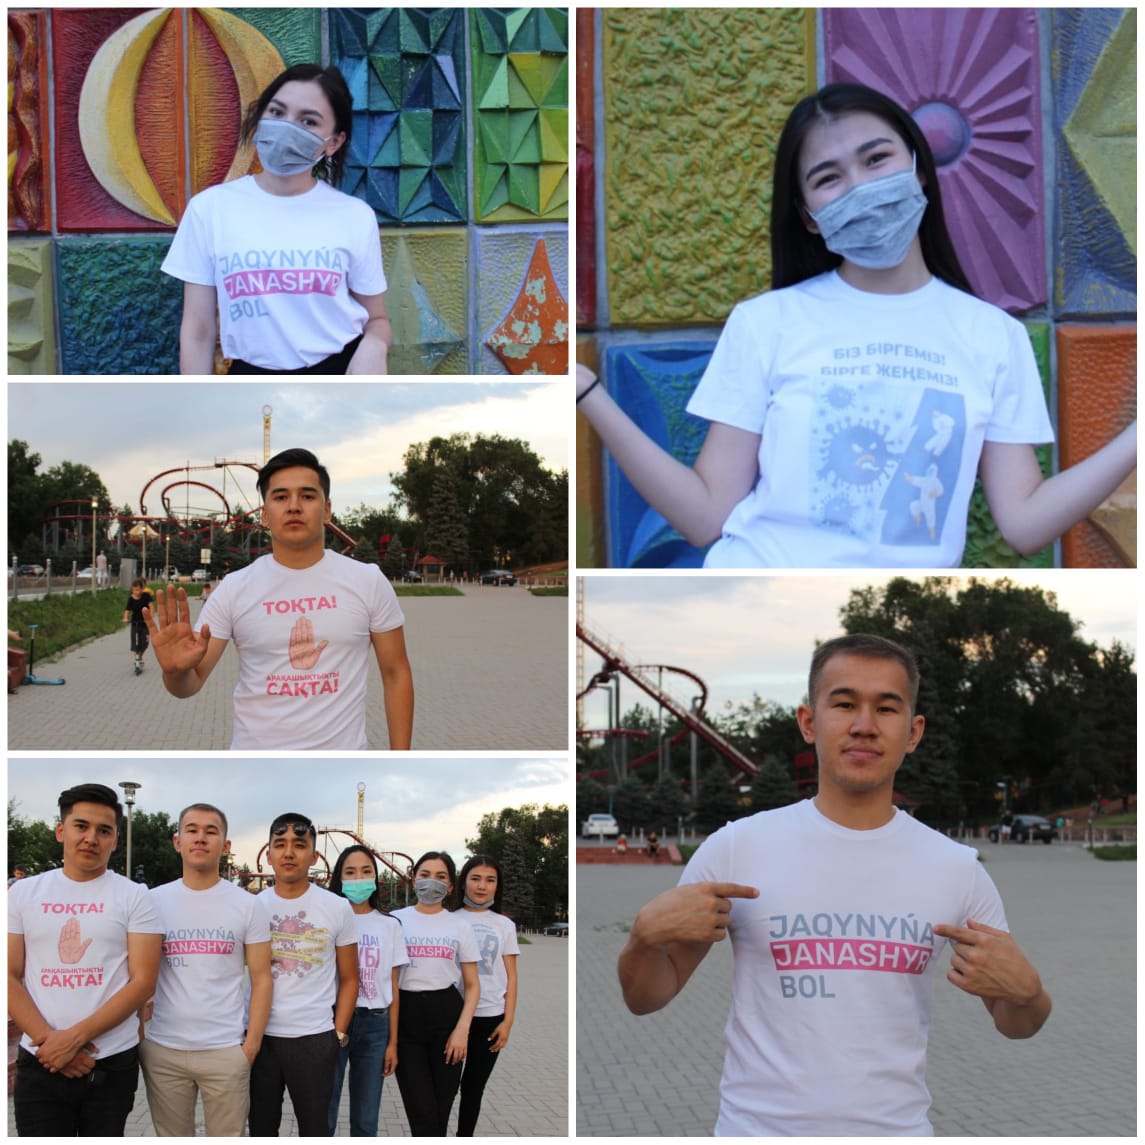 Алматы студенттер Альянсы коронавирусқа қарсы үндейтін футболка шығарды